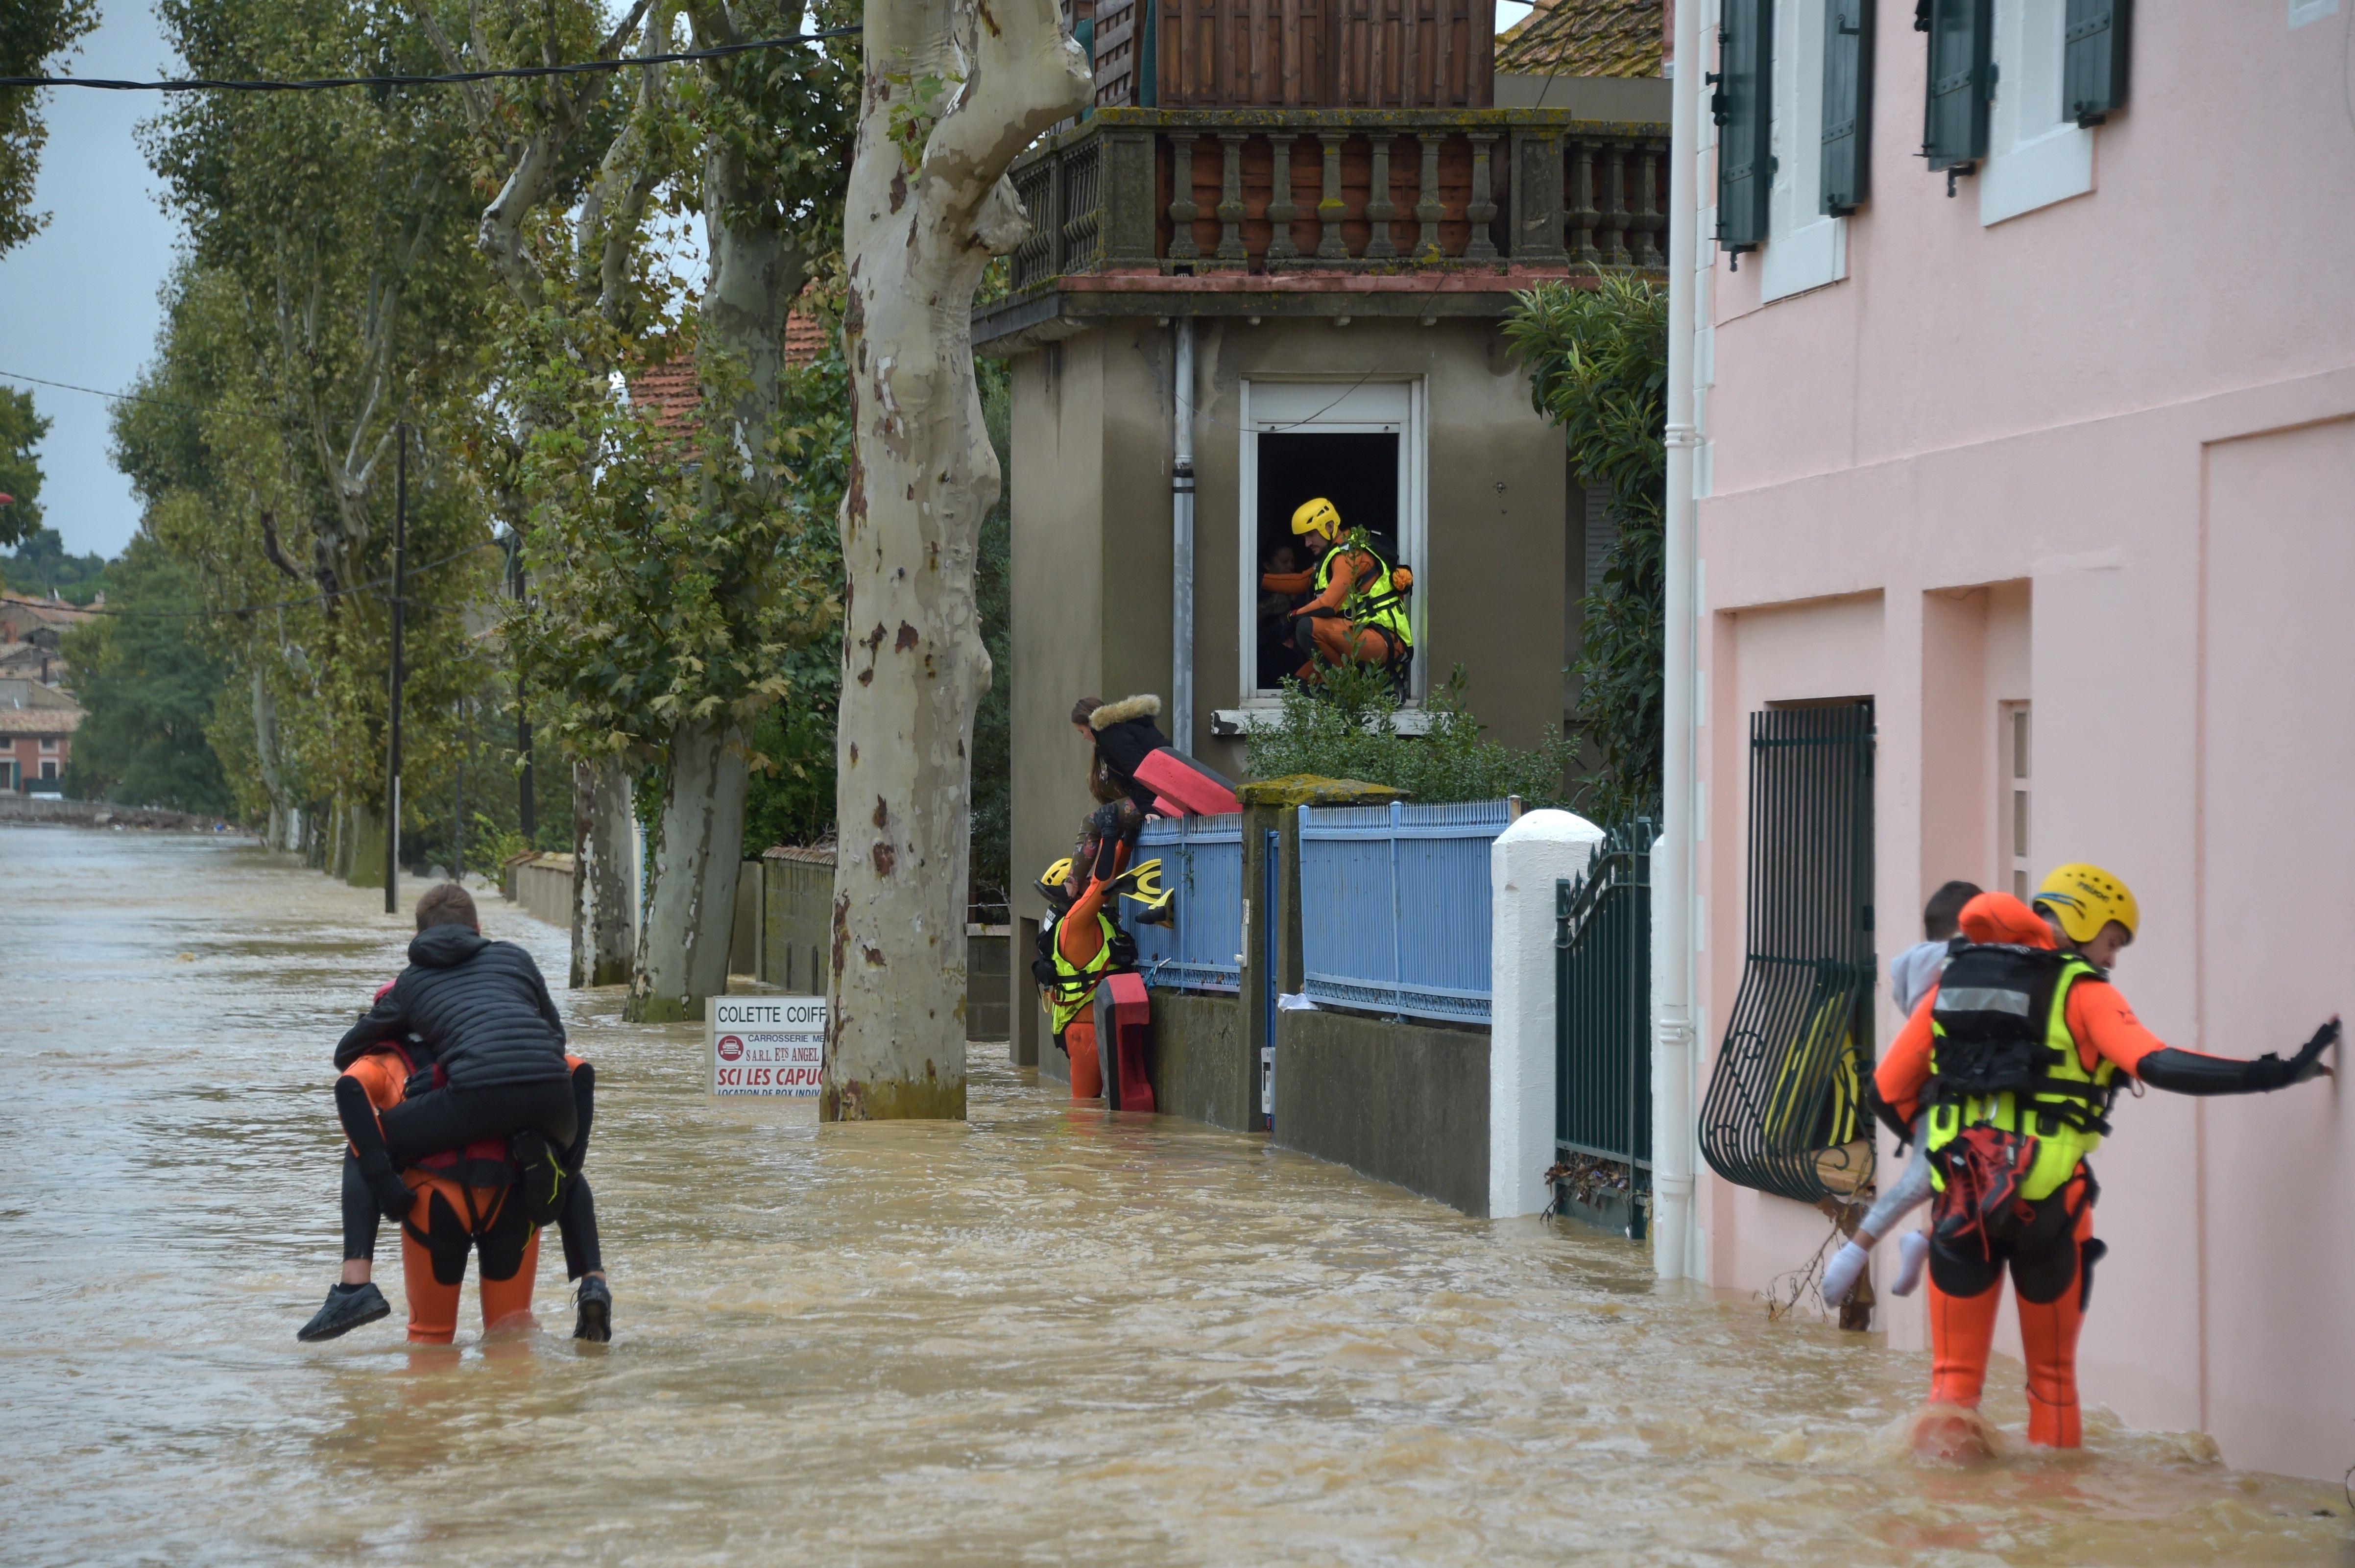 Des pompiers évacuent les habitants du village de Villegailhenc, dans l’Aude, inondé en octobre 2018. Équipés de combinaisons et de casques, ils portent les enfants dans les bras et sur leur dos. L’eau, qui leur arrive au genou, a un débit important.